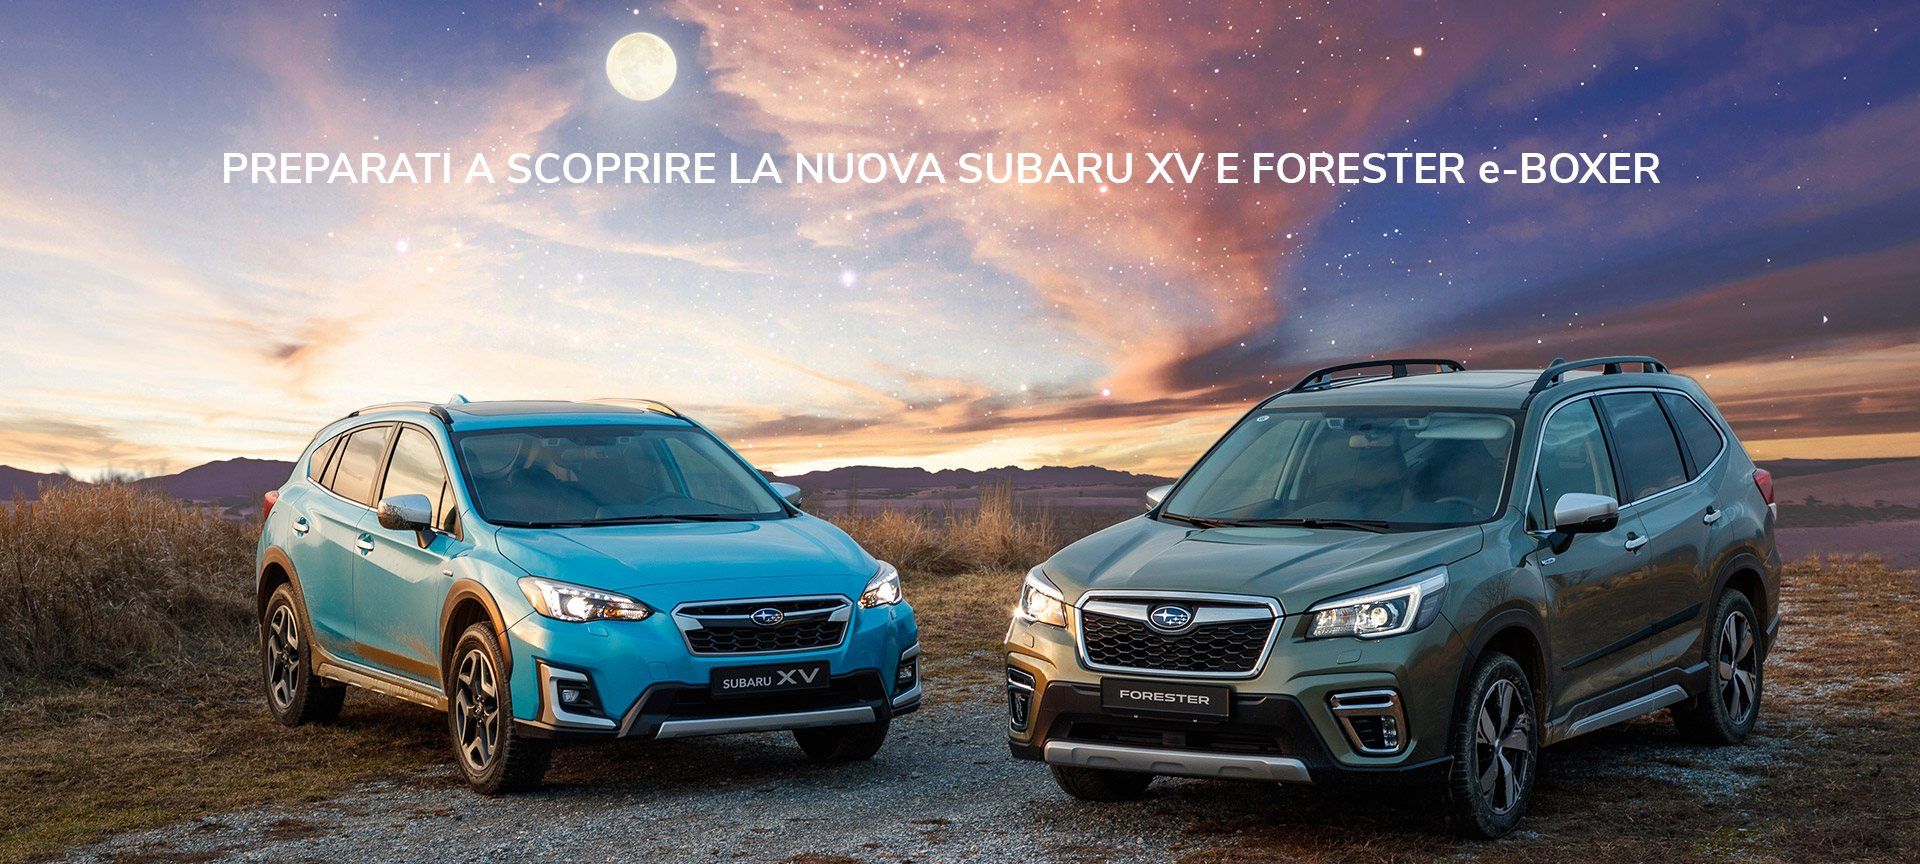 Subaru XV e Forester